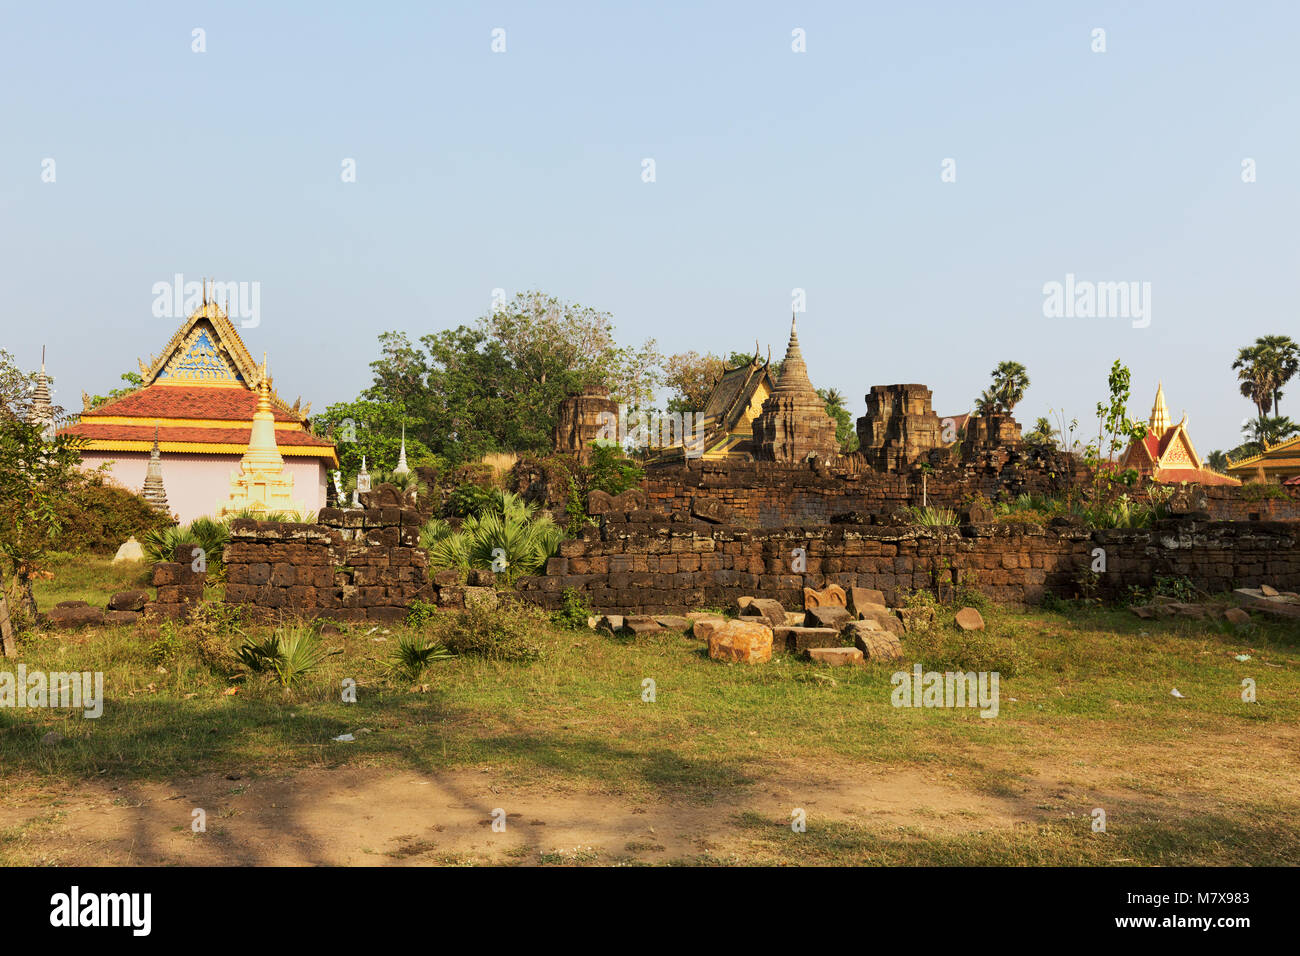 Nokor, aka Bachey Tempel Wat Nokor oder Banteay Prey Nokor, ein hinduistischer Tempel, aus dem 11. Jahrhundert mit modernen buddhistischen Tempel, Kampong Cham, Kambodscha Asien Stockfoto